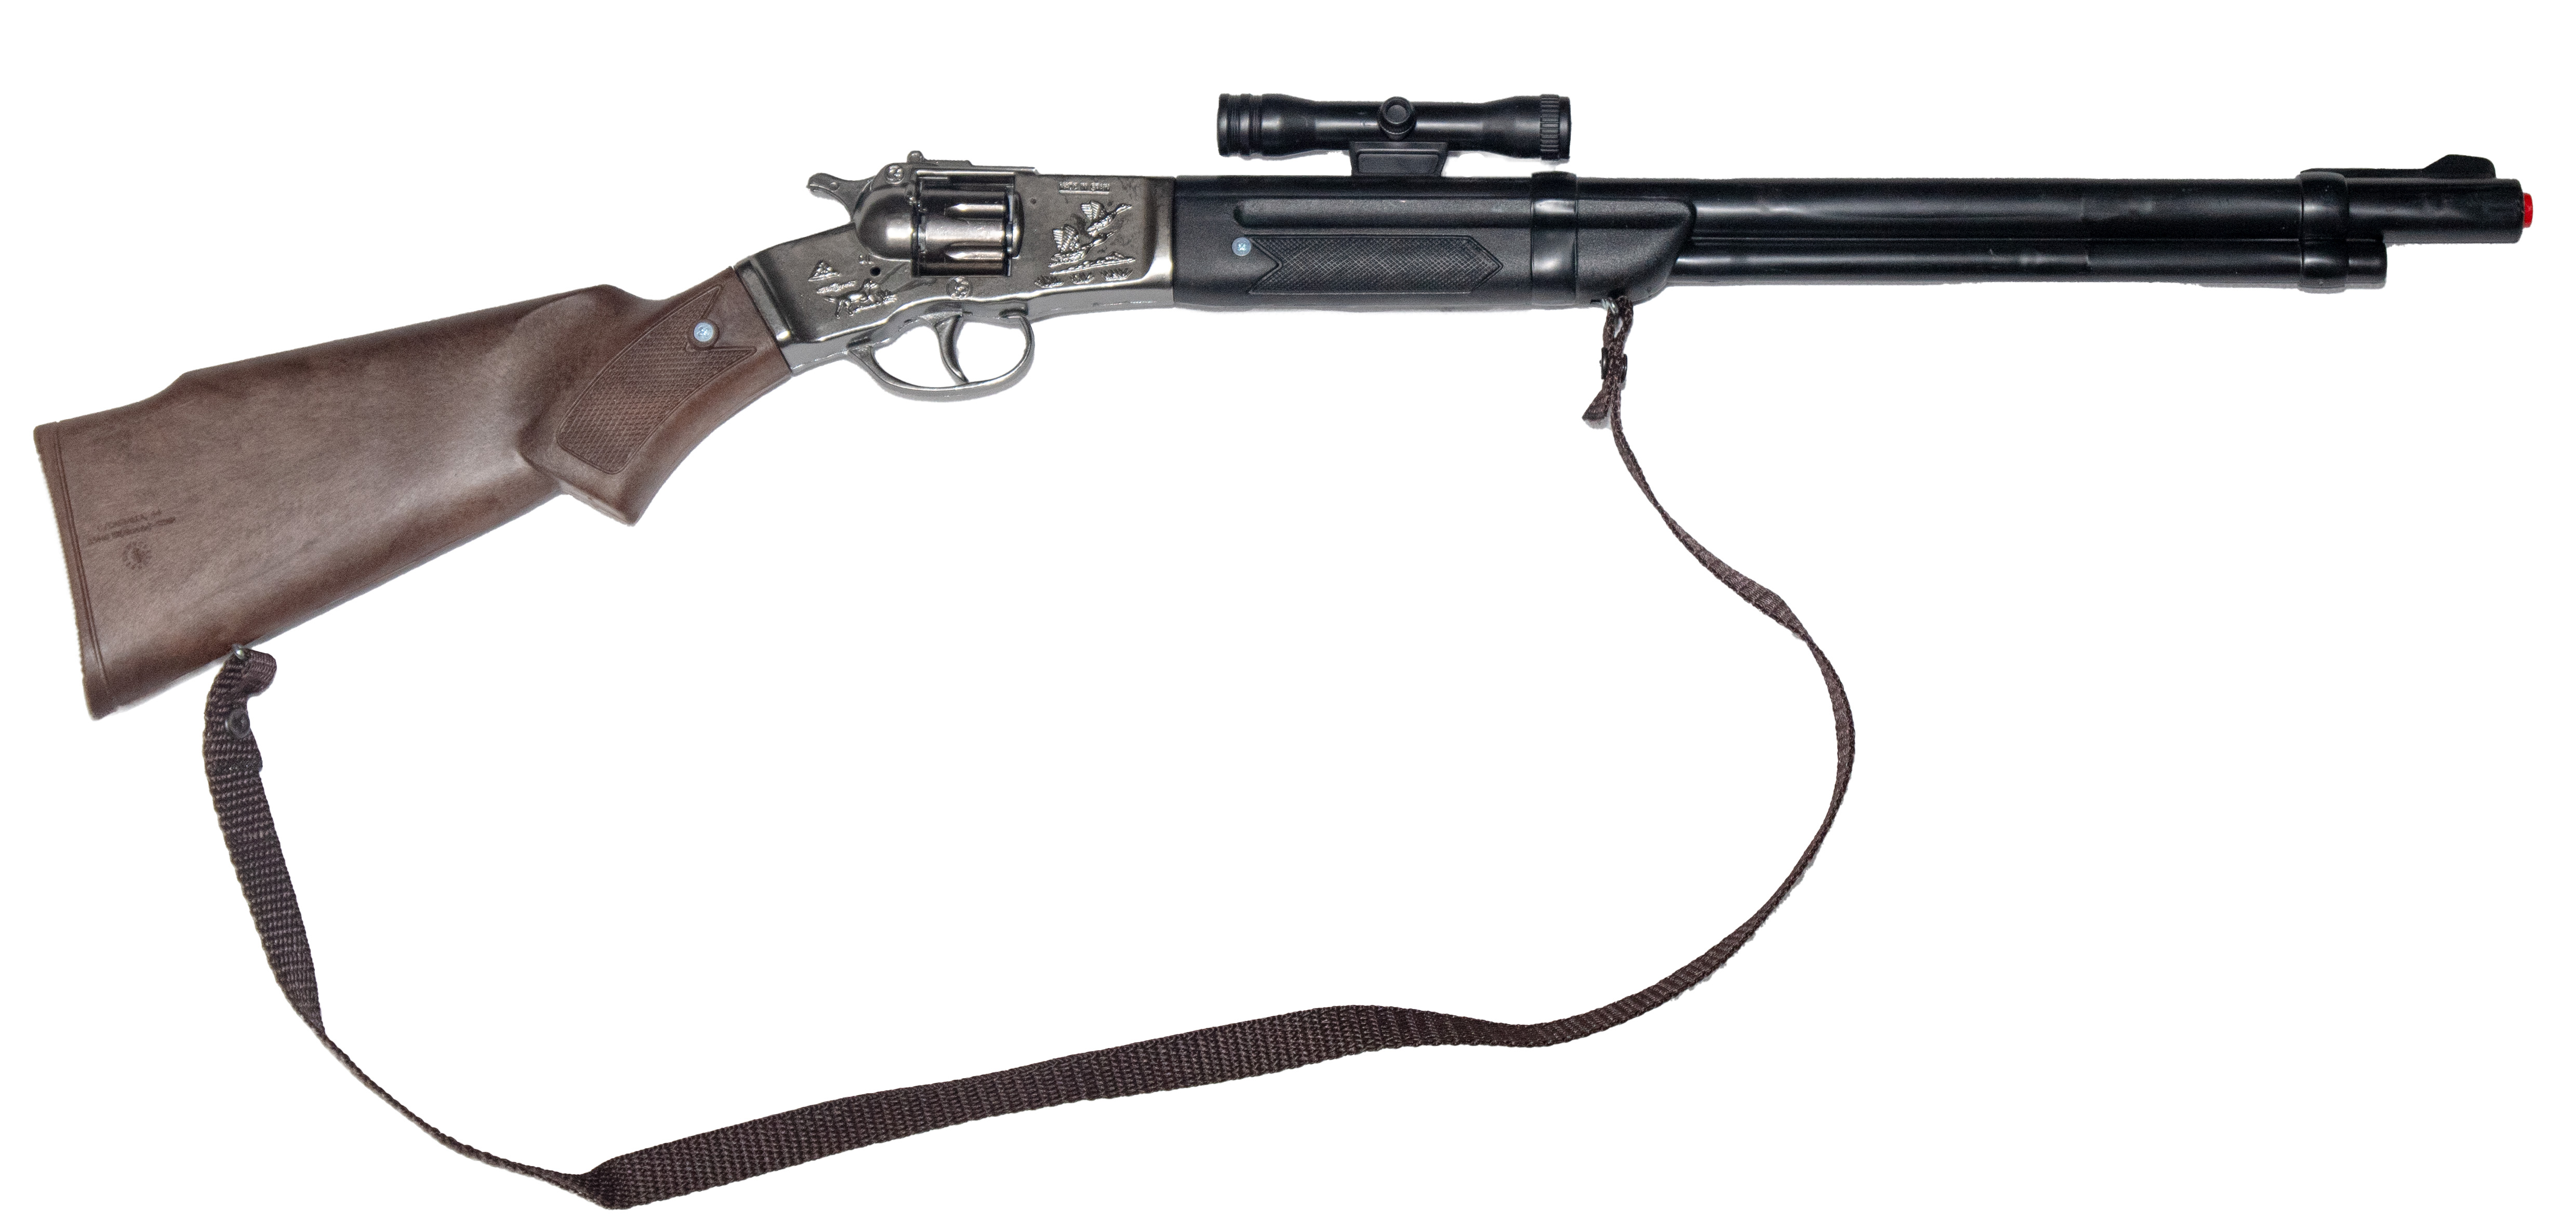 Western rifle